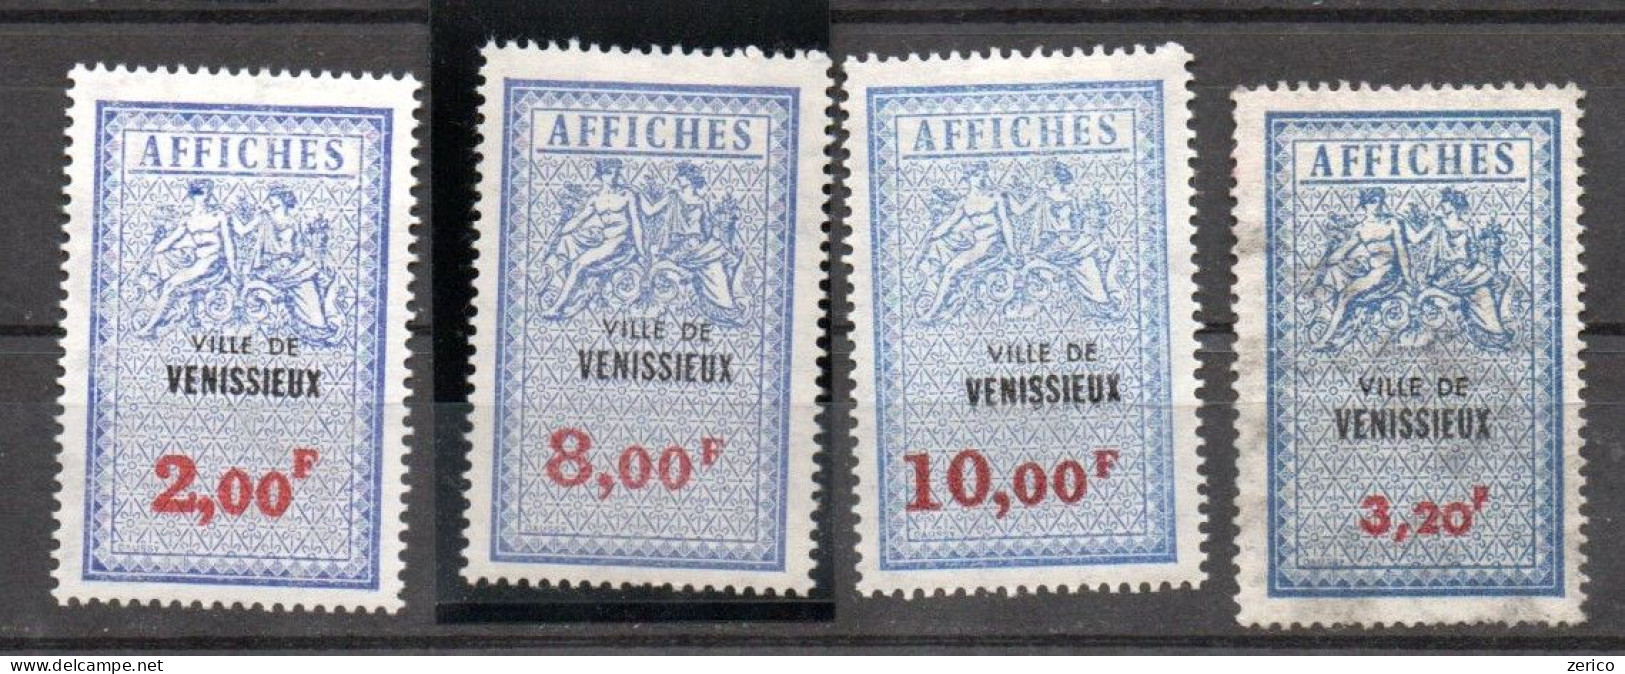 VENISSIEUX Rhône Taxes Sur Les Affiches Type 3A Fiscal Fiscaux Affiche Affichage - Stamps